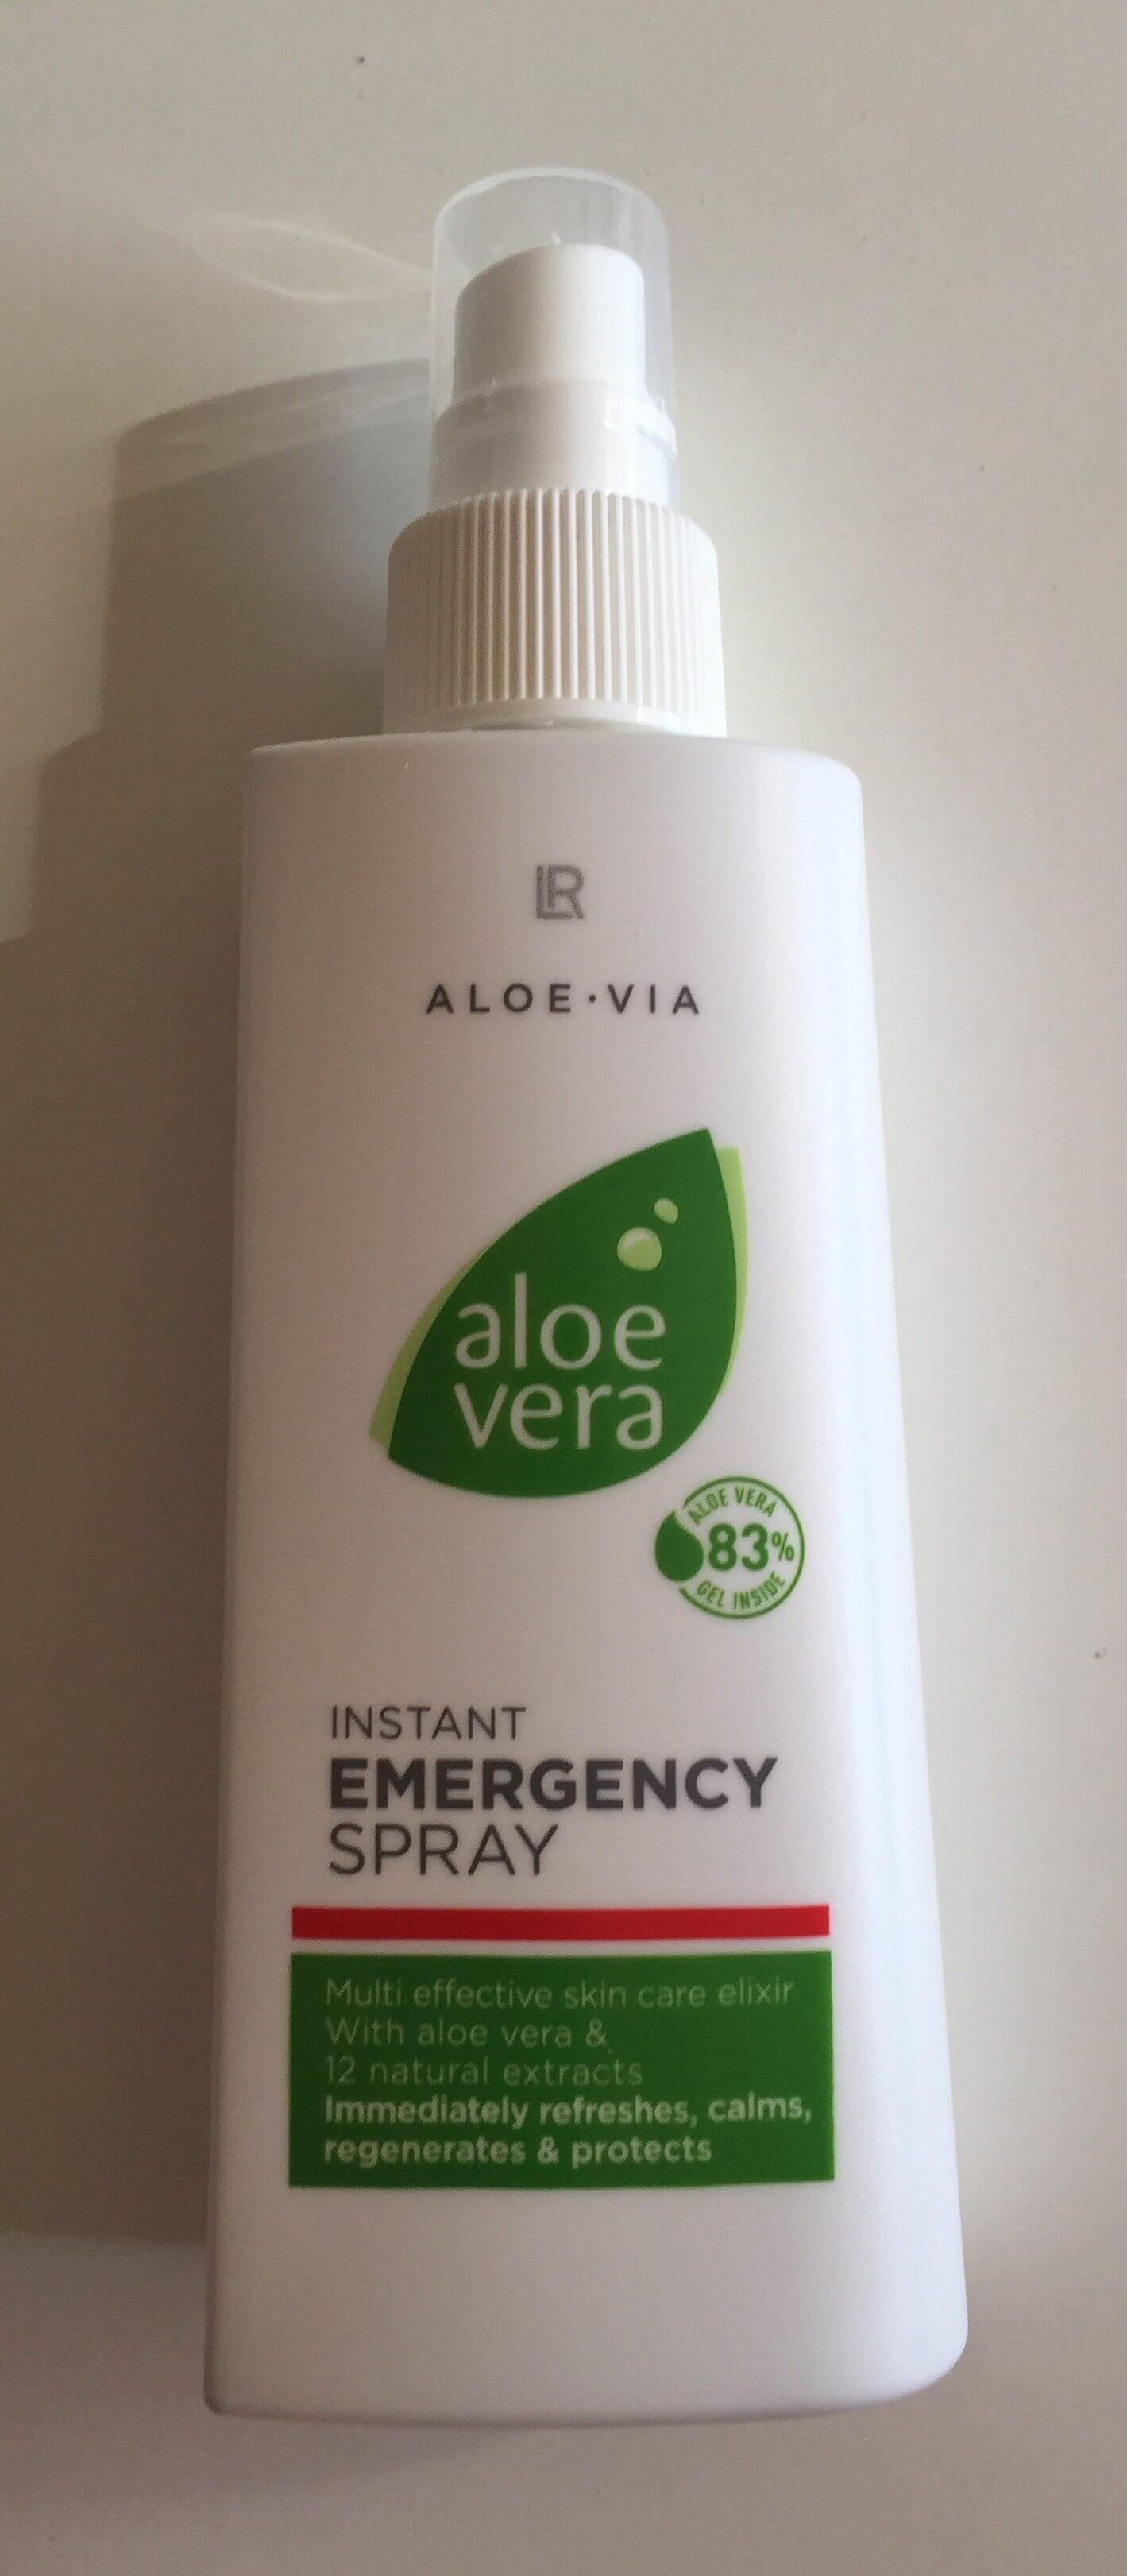 LR Aloe Vera Emergency Spray (1)